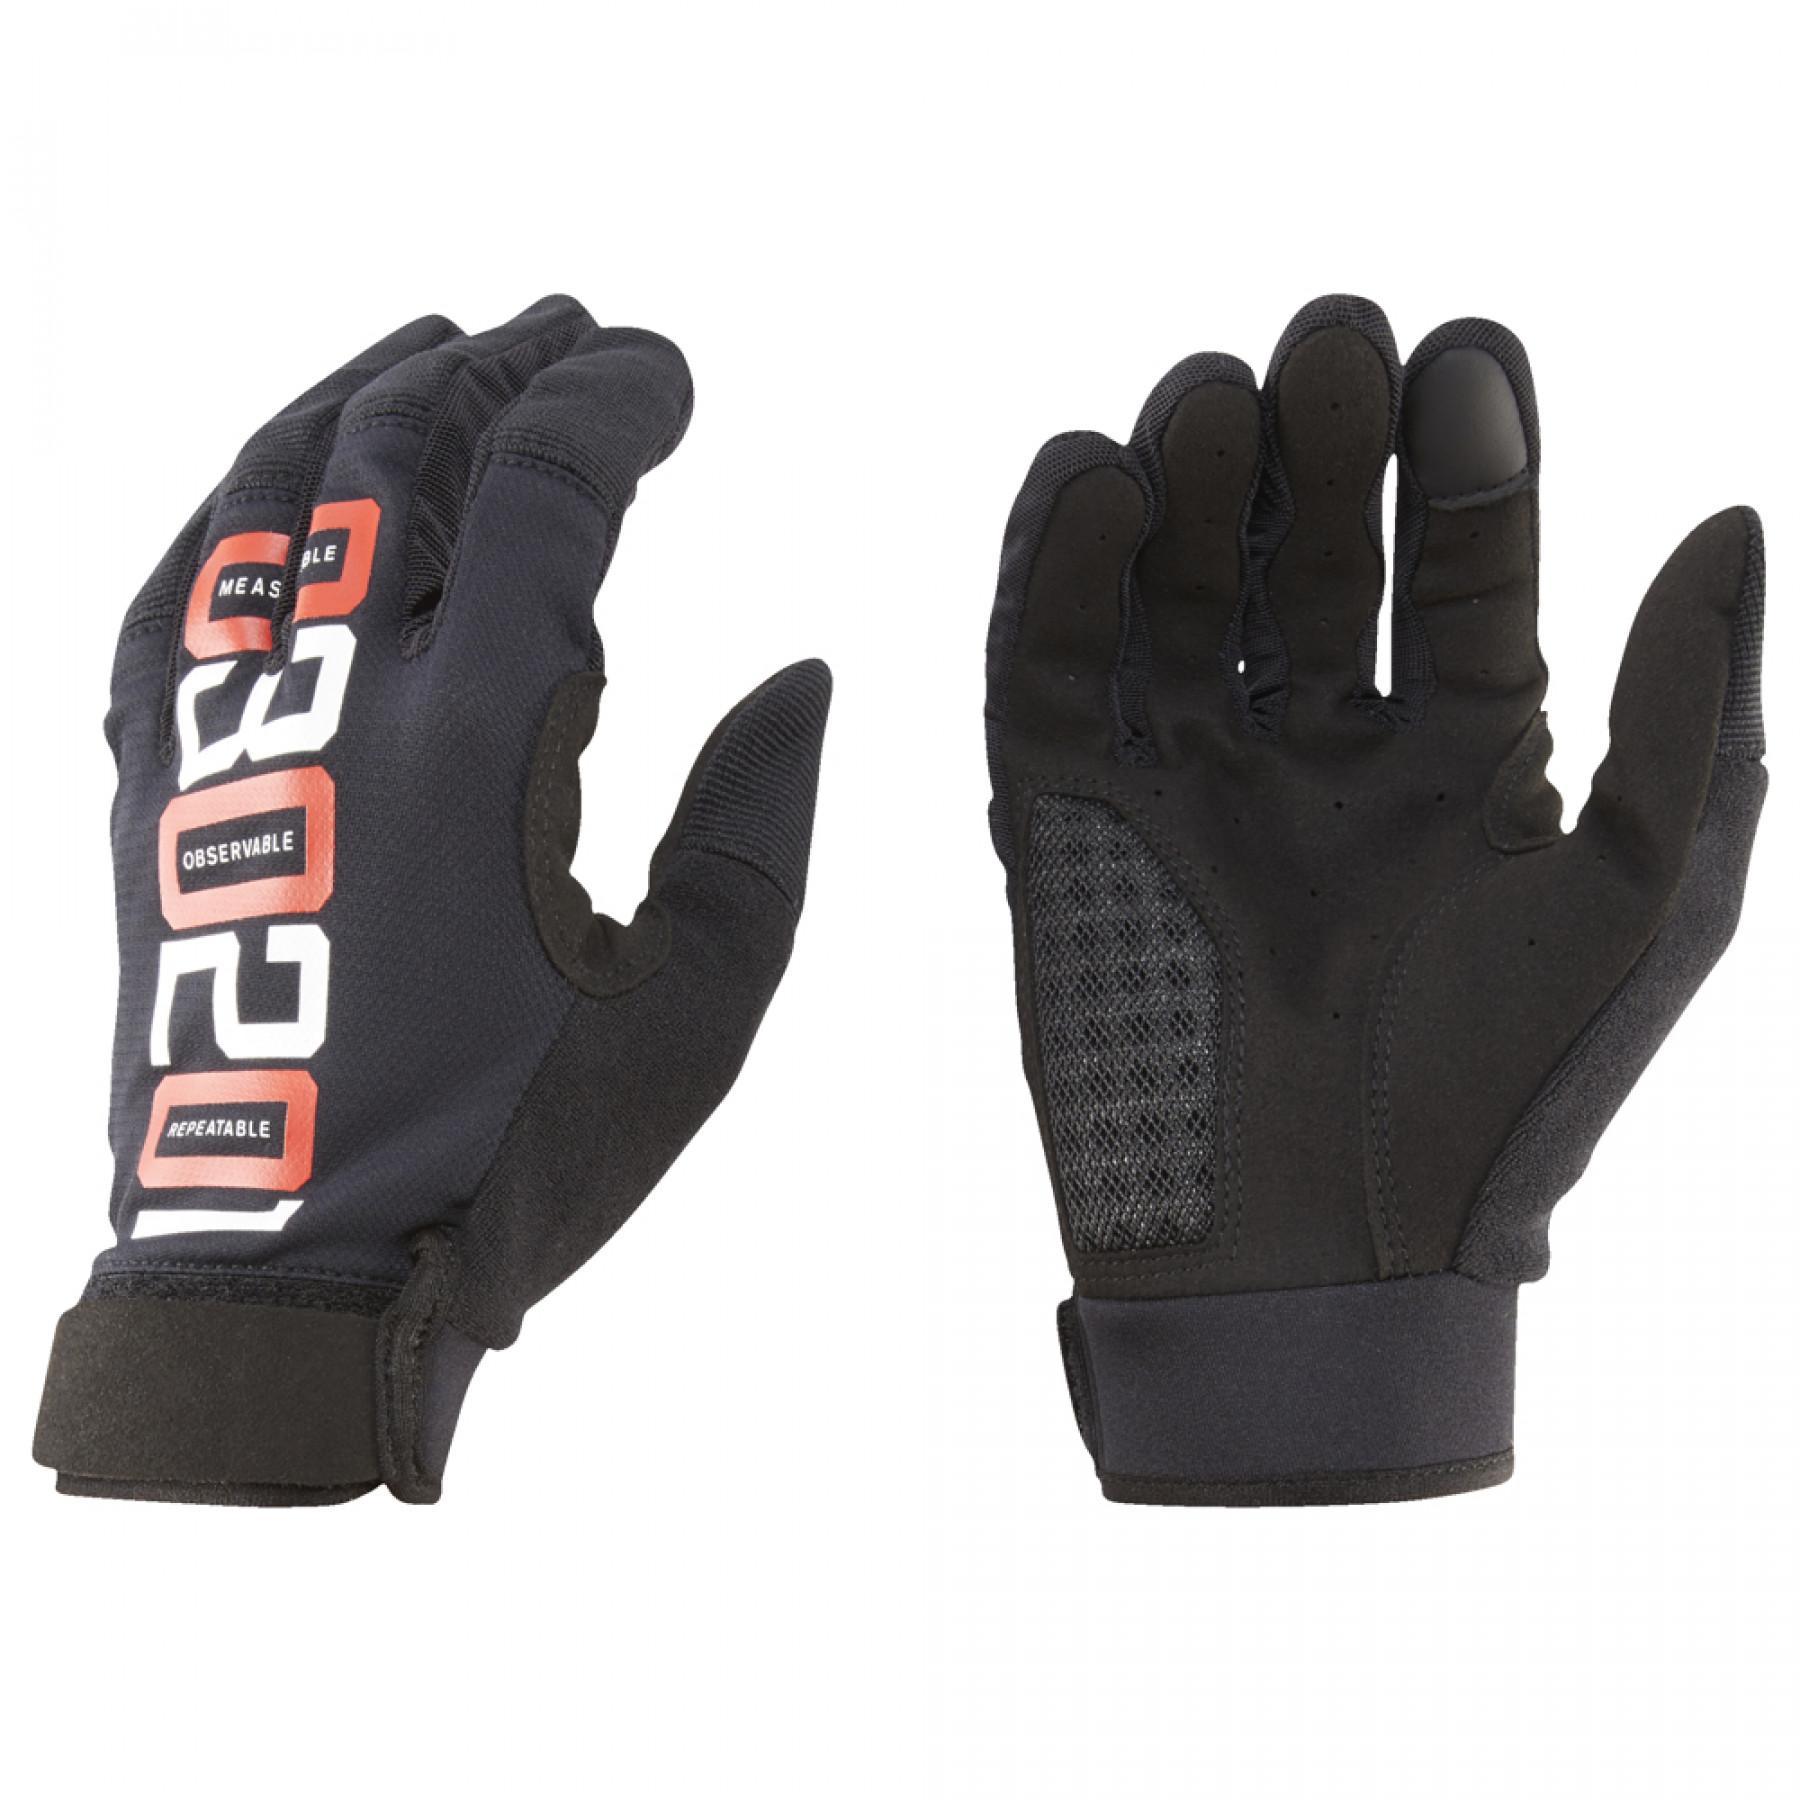 Handskar för träning Reebok CrossFit®